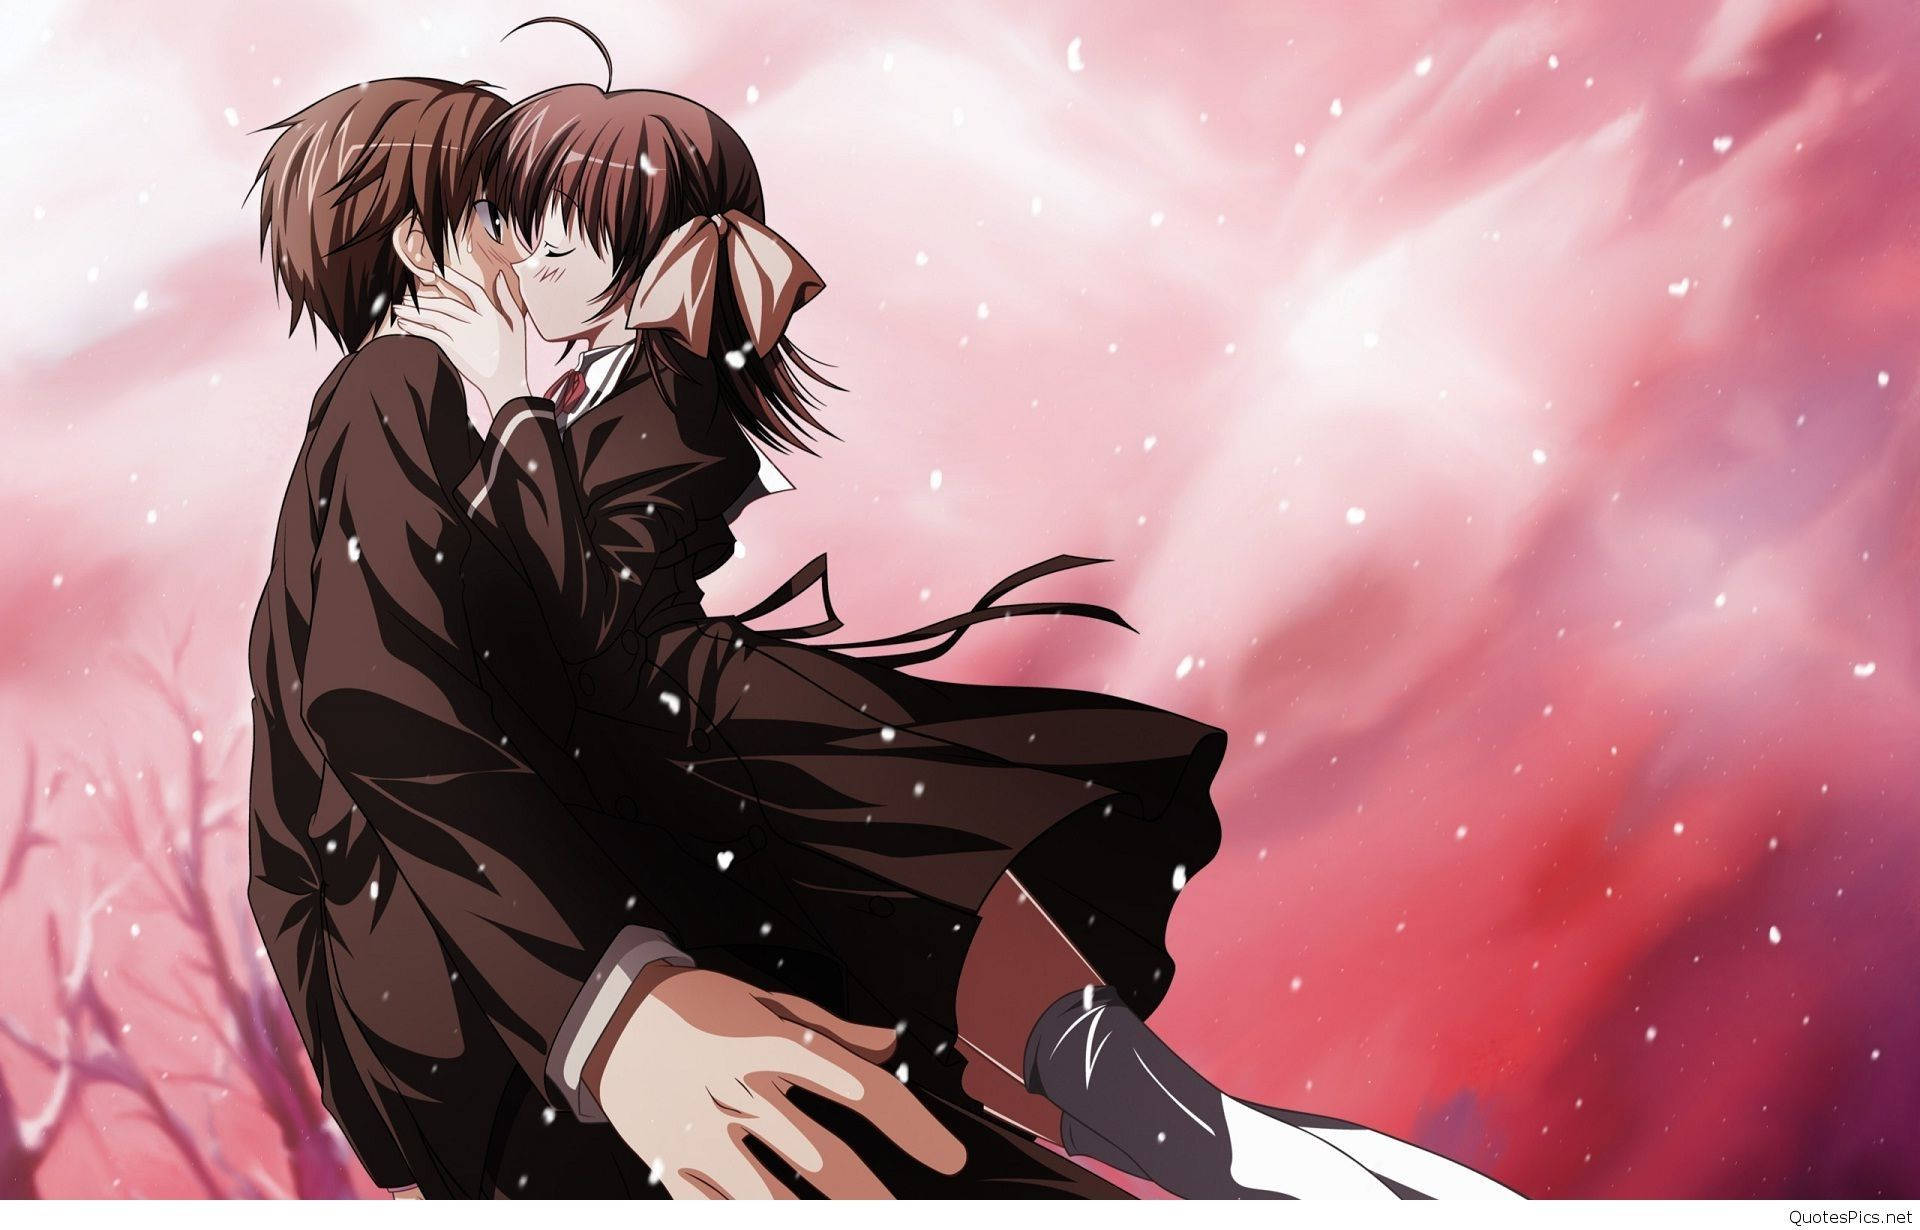 Free Anime Couple Hug Wallpaper Downloads, [100+] Anime Couple Hug  Wallpapers for FREE 